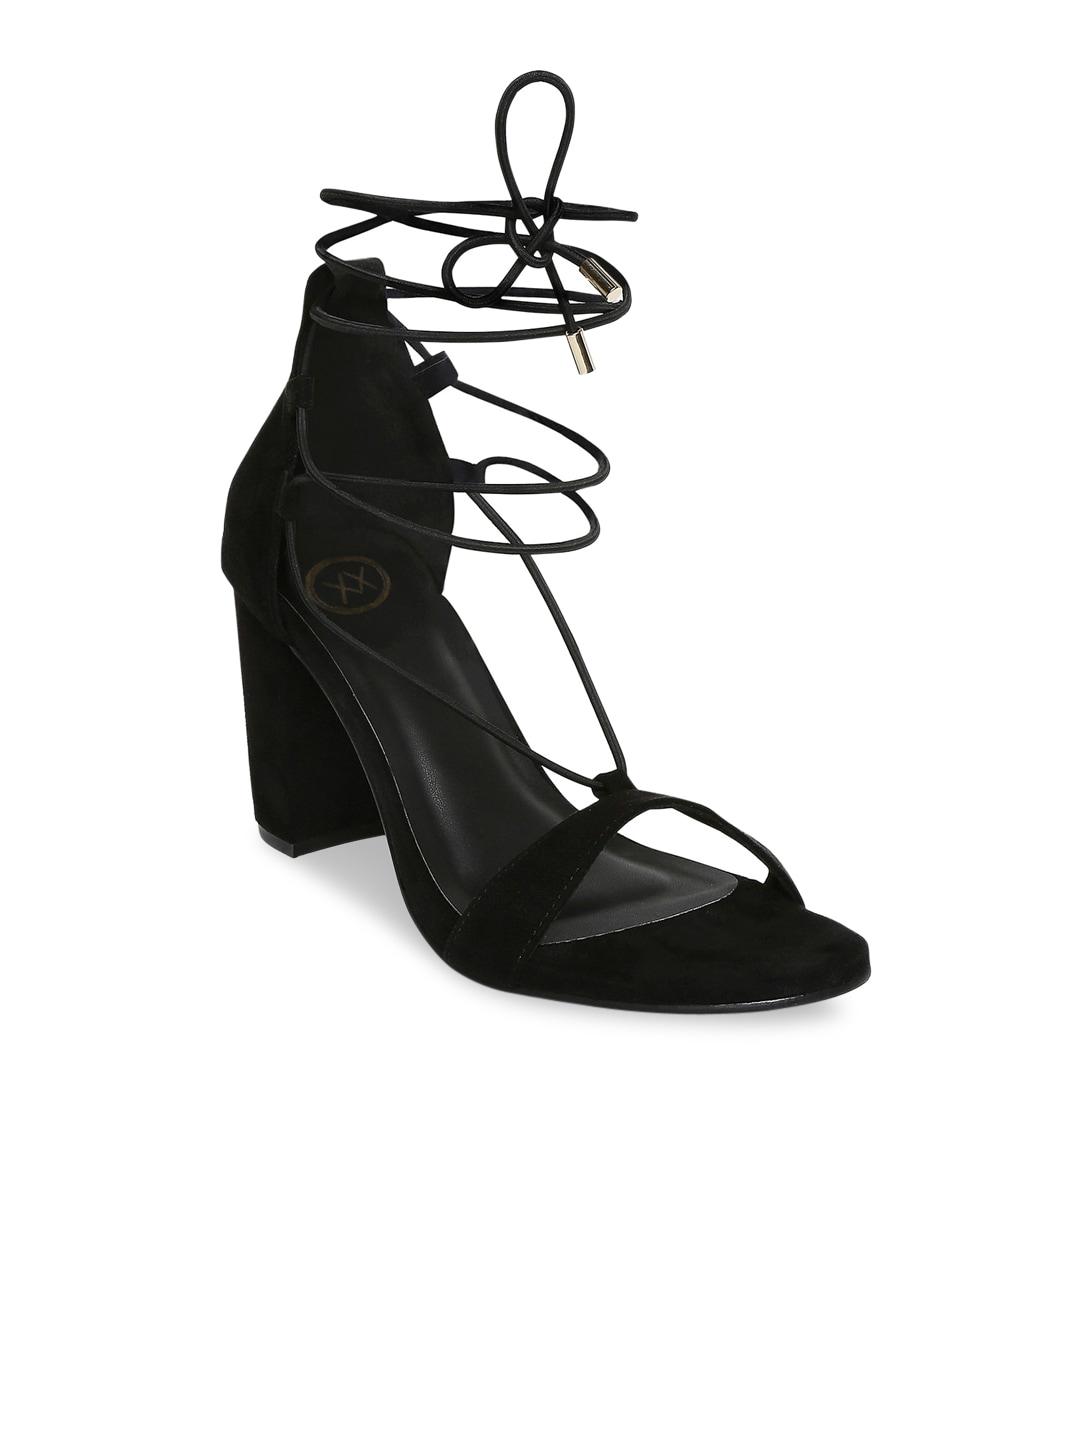 20dresses women black suede block heels